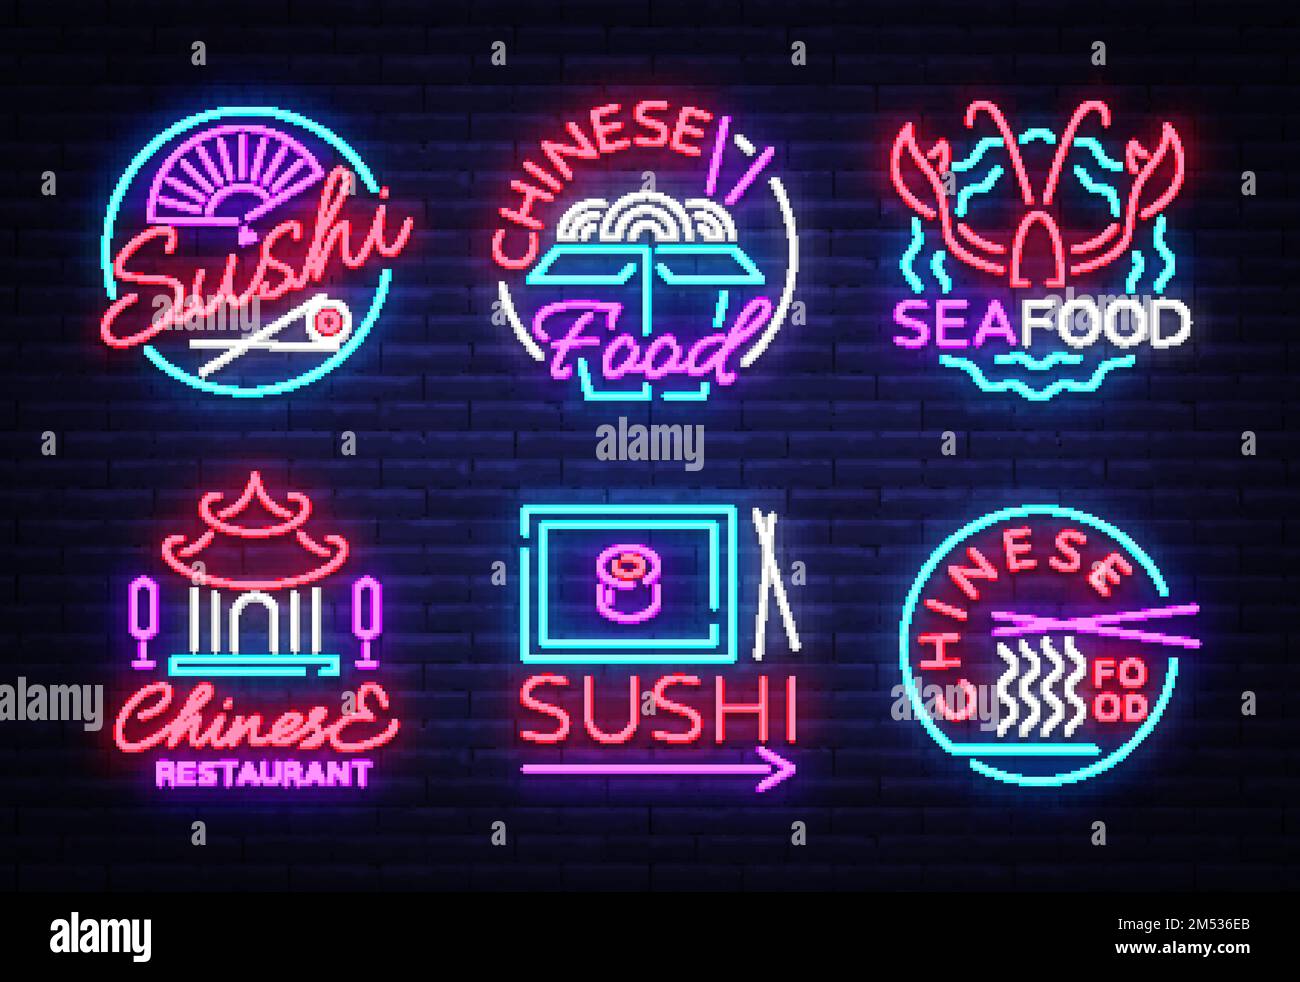 Kollektion Neon Signs Food. Logos im Neon-Stil Sushi, Fisch und Meeresfrüchte, Hummer, chinesische Speisen, Lichtzeichen, Nachtneonwerbung für Restaurant, Snack Stock Vektor